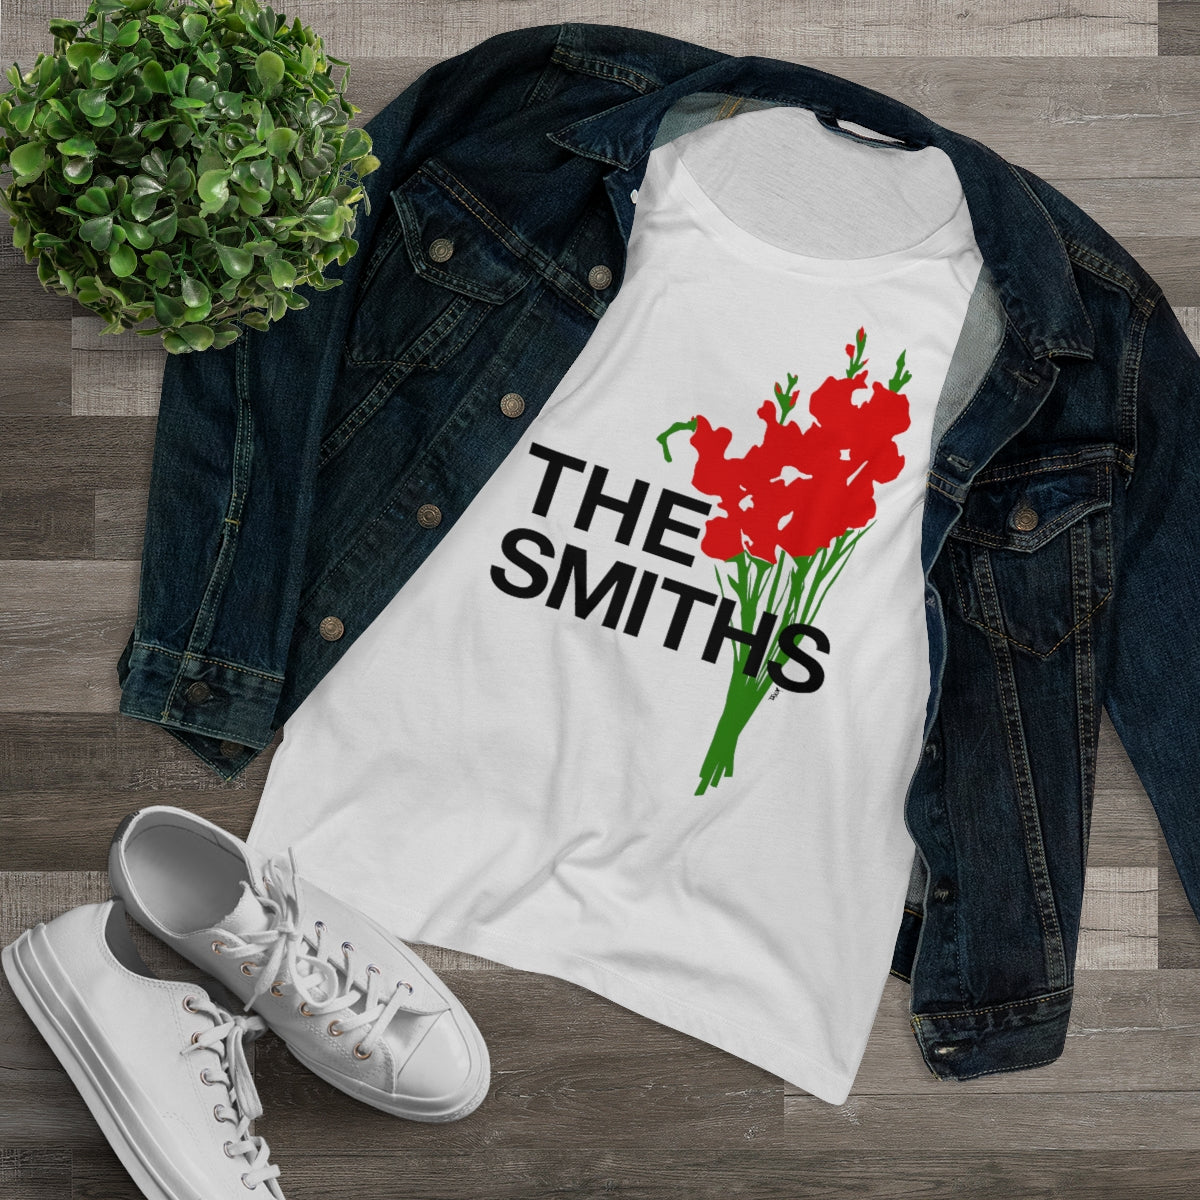 THE SMITHS - 1984 UK Tour T Shirt - Women's T Shirt